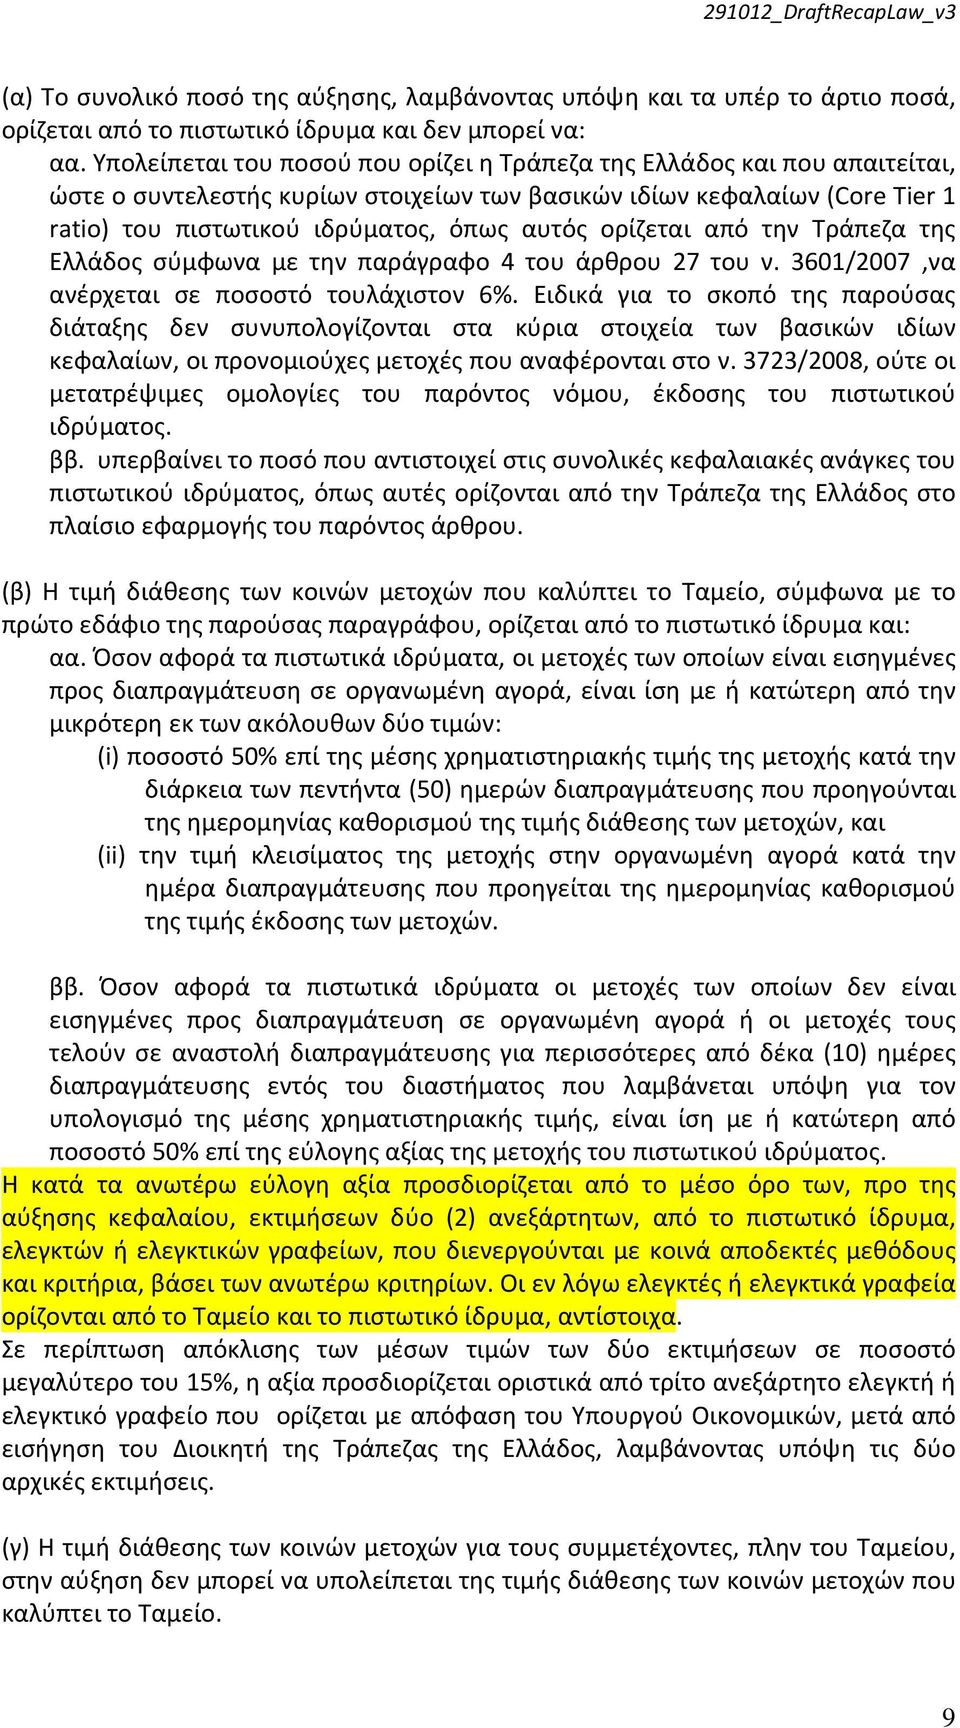 ορίζεται από την Τράπεζα της Ελλάδος σύμφωνα με την παράγραφο 4 του άρθρου 27 του ν. 3601/2007,να ανέρχεται σε ποσοστό τουλάχιστον 6%.